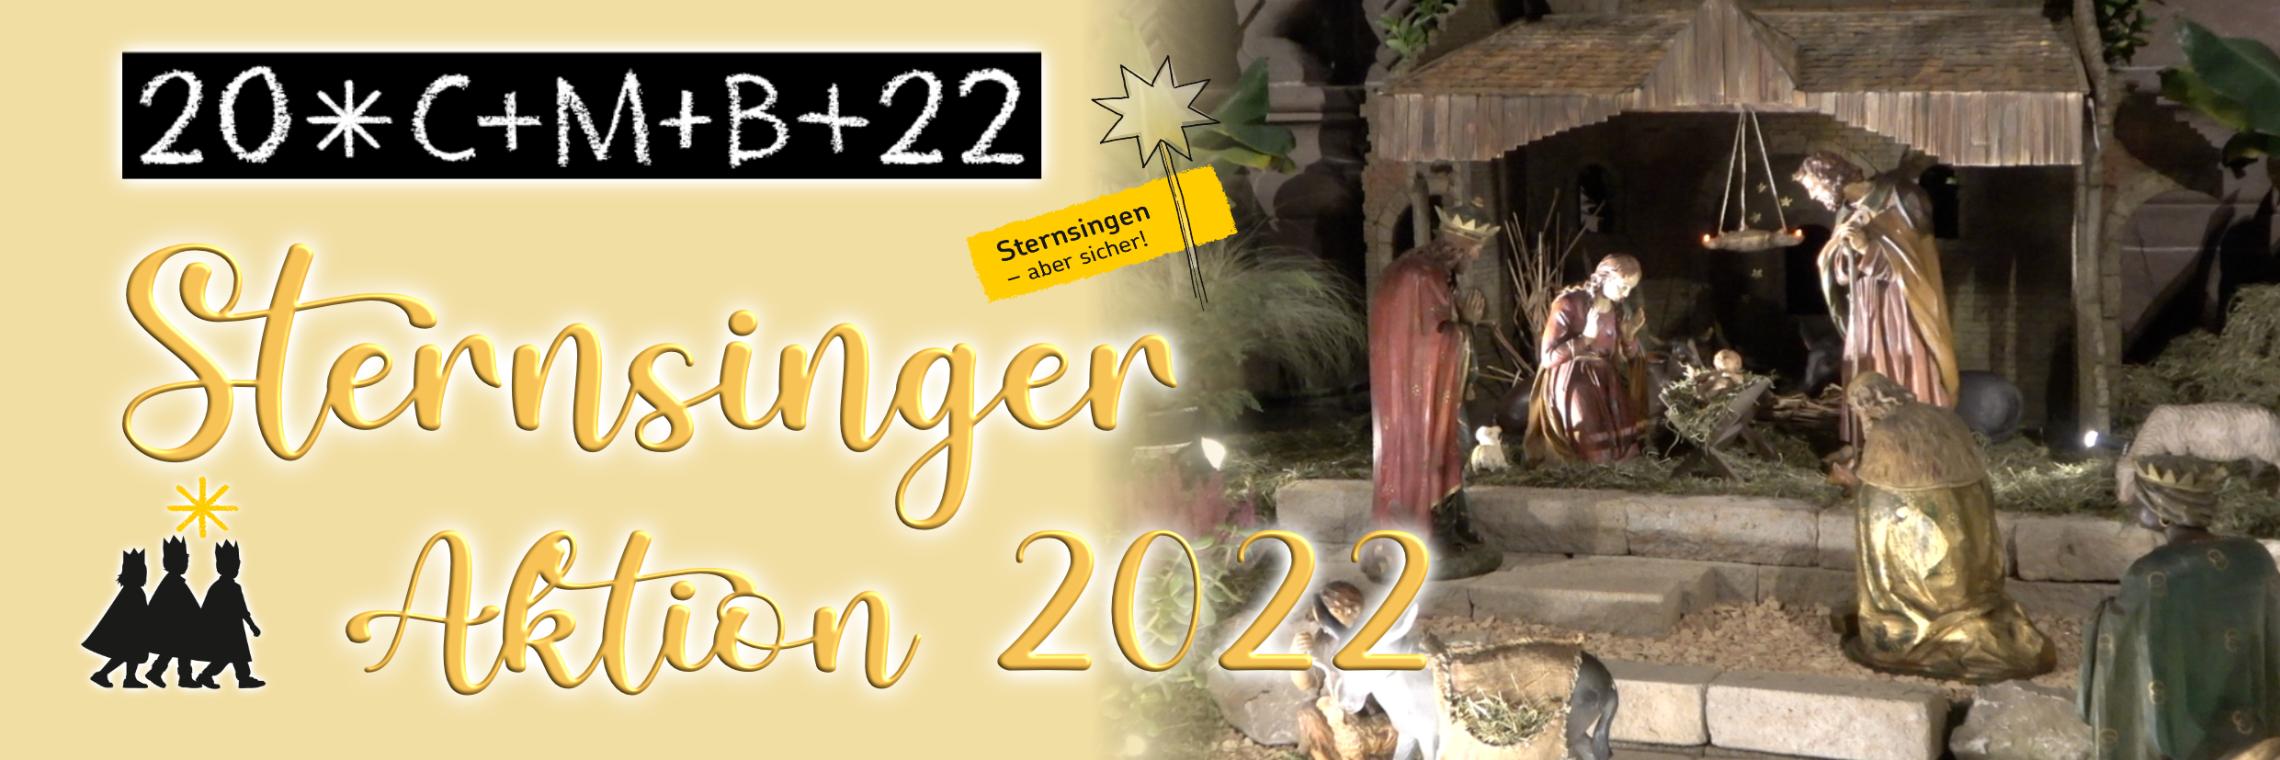 Sternsinger Aktion 2022 (c) Martina Bauer